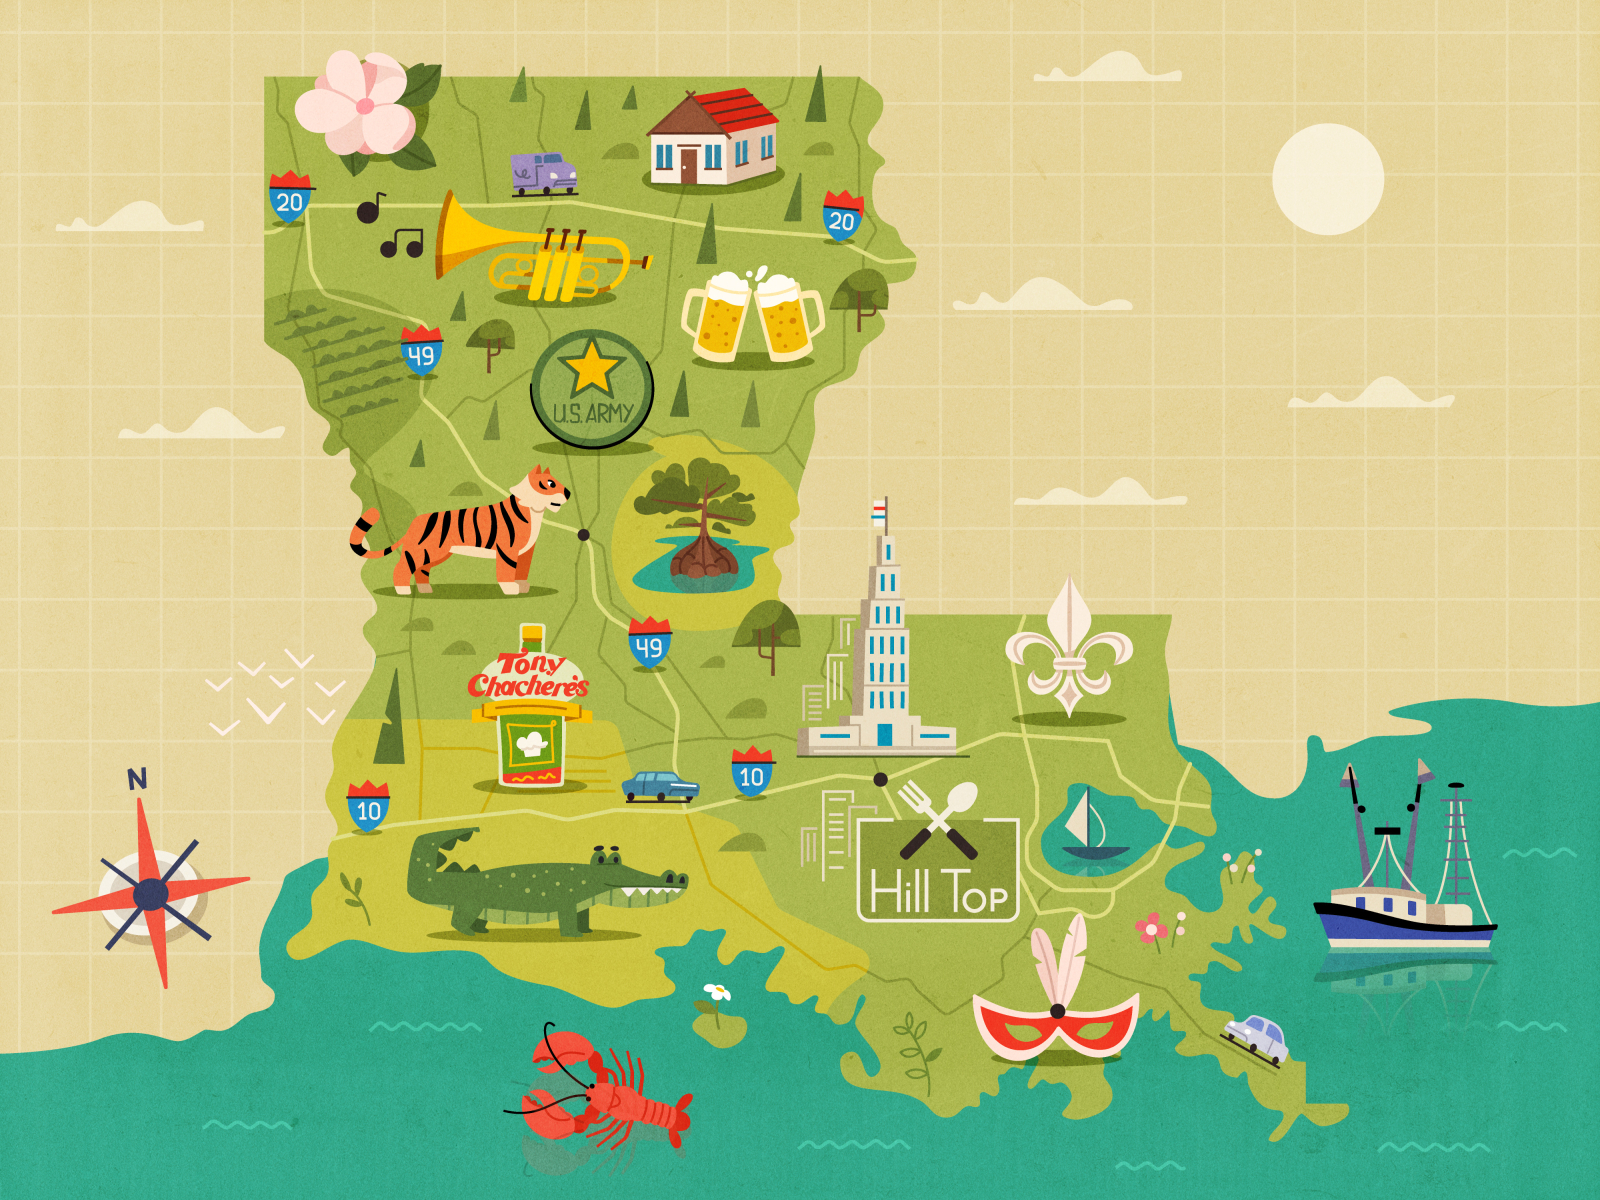 Map of Louisiana by Dima Moiseenko on Dribbble